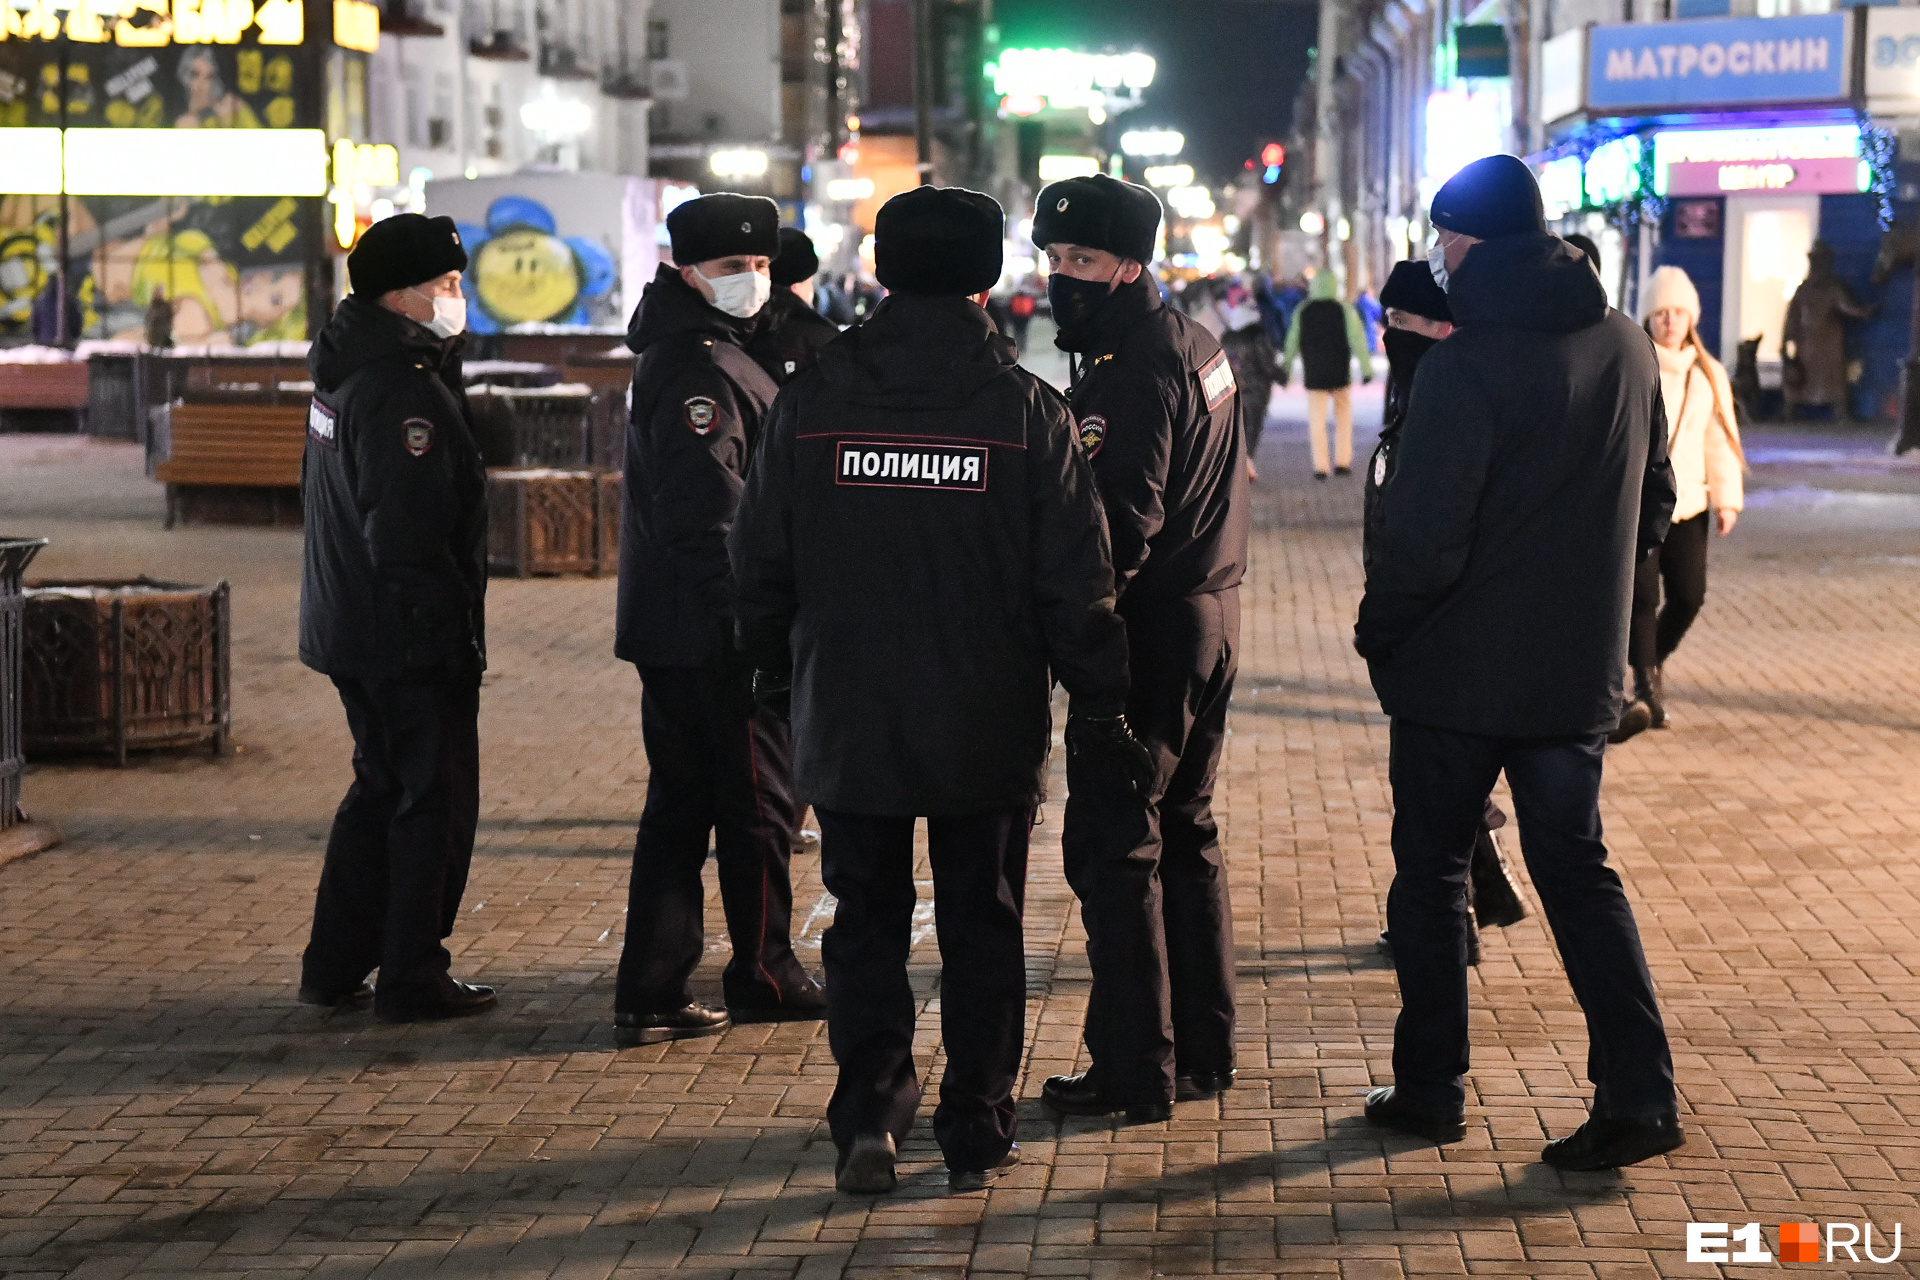 «Такого не было никогда». В Екатеринбурге сразу несколько десятков полицейских положили рапорты на стол